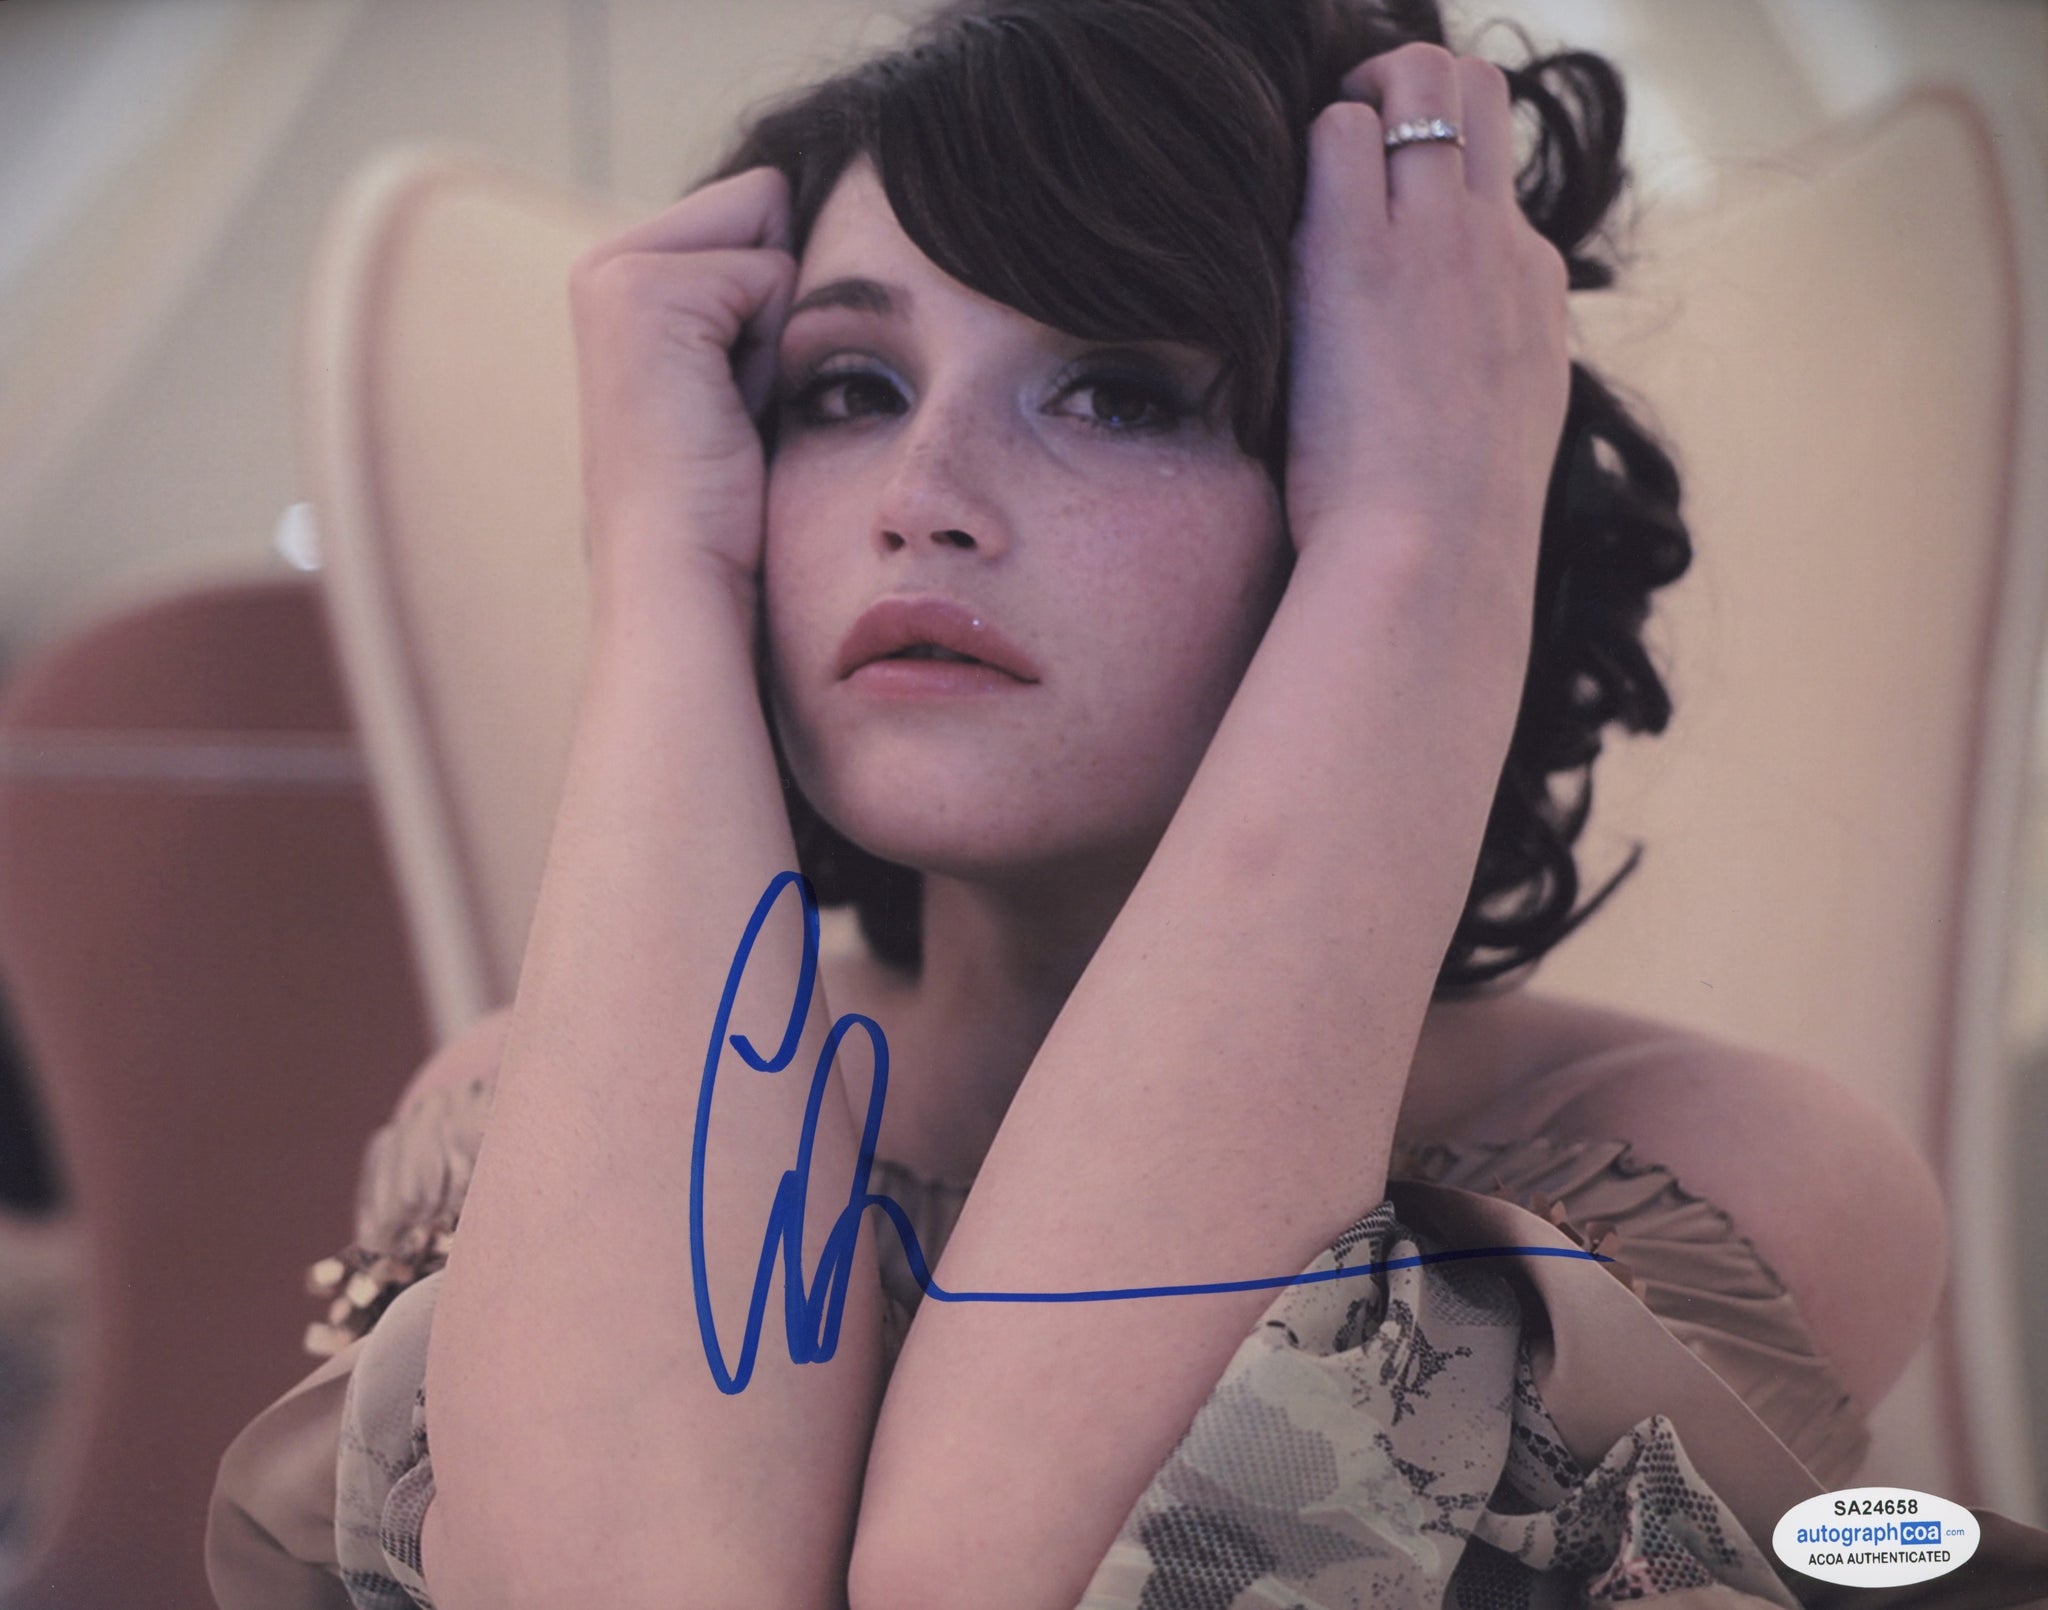 Gemma Arterton Bond Signed Autograph 8x10 Photo Sexy ACOA #9 - Outlaw Hobbies Authentic Autographs